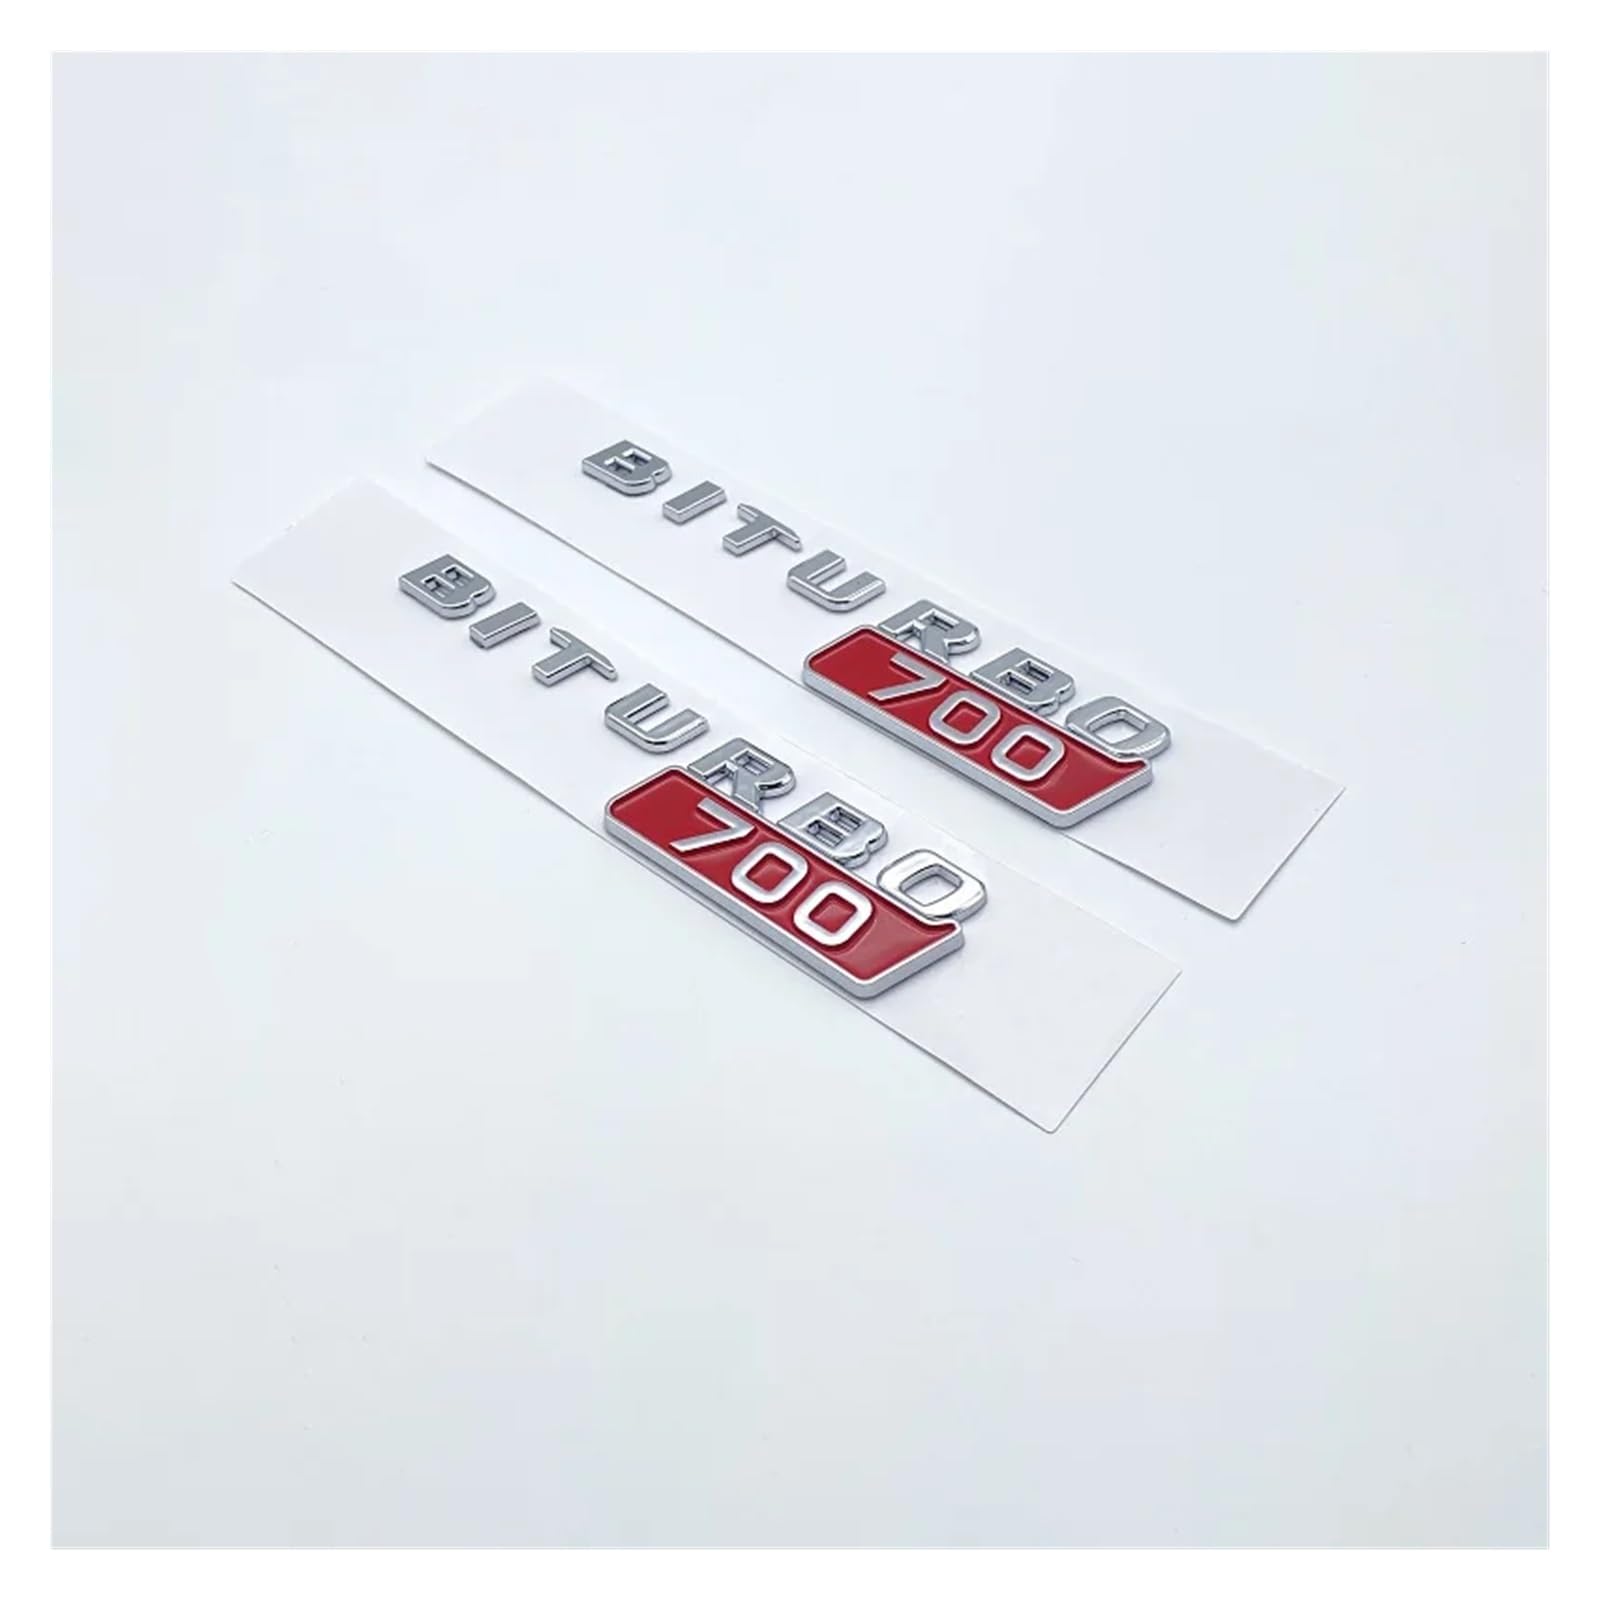 zlj6688 Auto ABS BITURBO 700 800 900 Logo Seite Kotflügel Kofferraum Körper Abzeichen Emblem Aufkleber Aufkleber Kompatibel mit G Klasse G700 G800 G900 W463 (Color : Silver Red 700, Size : 2pcs) von MyFisher